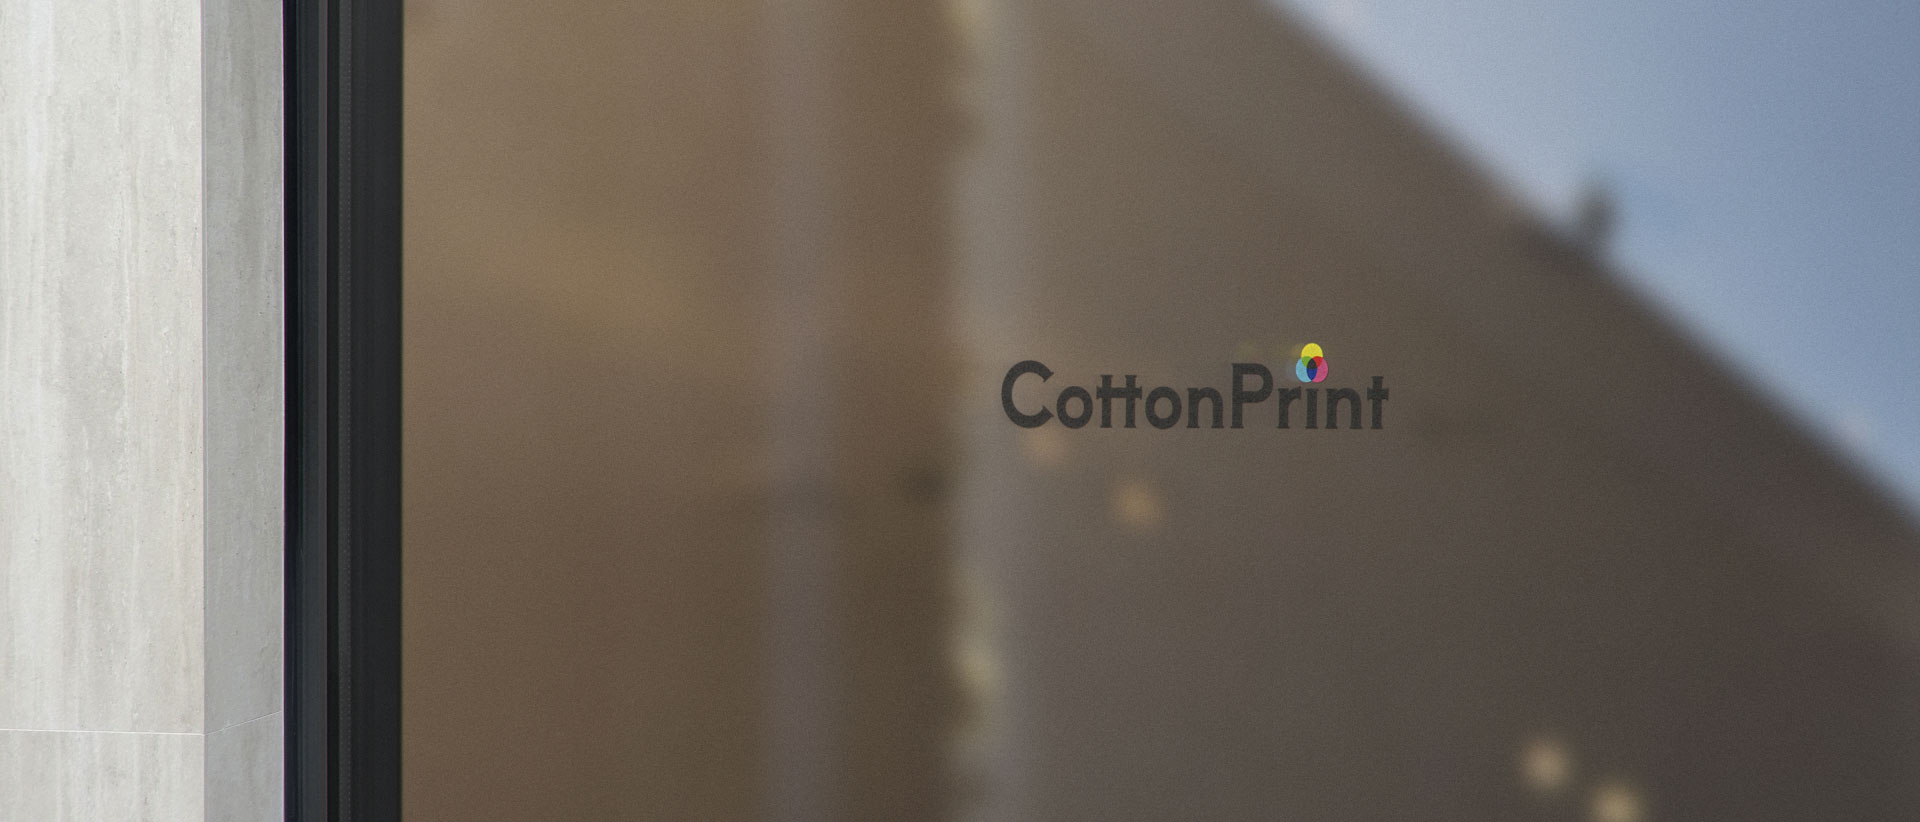 Создание логотипа компании «CottonPrint» в 